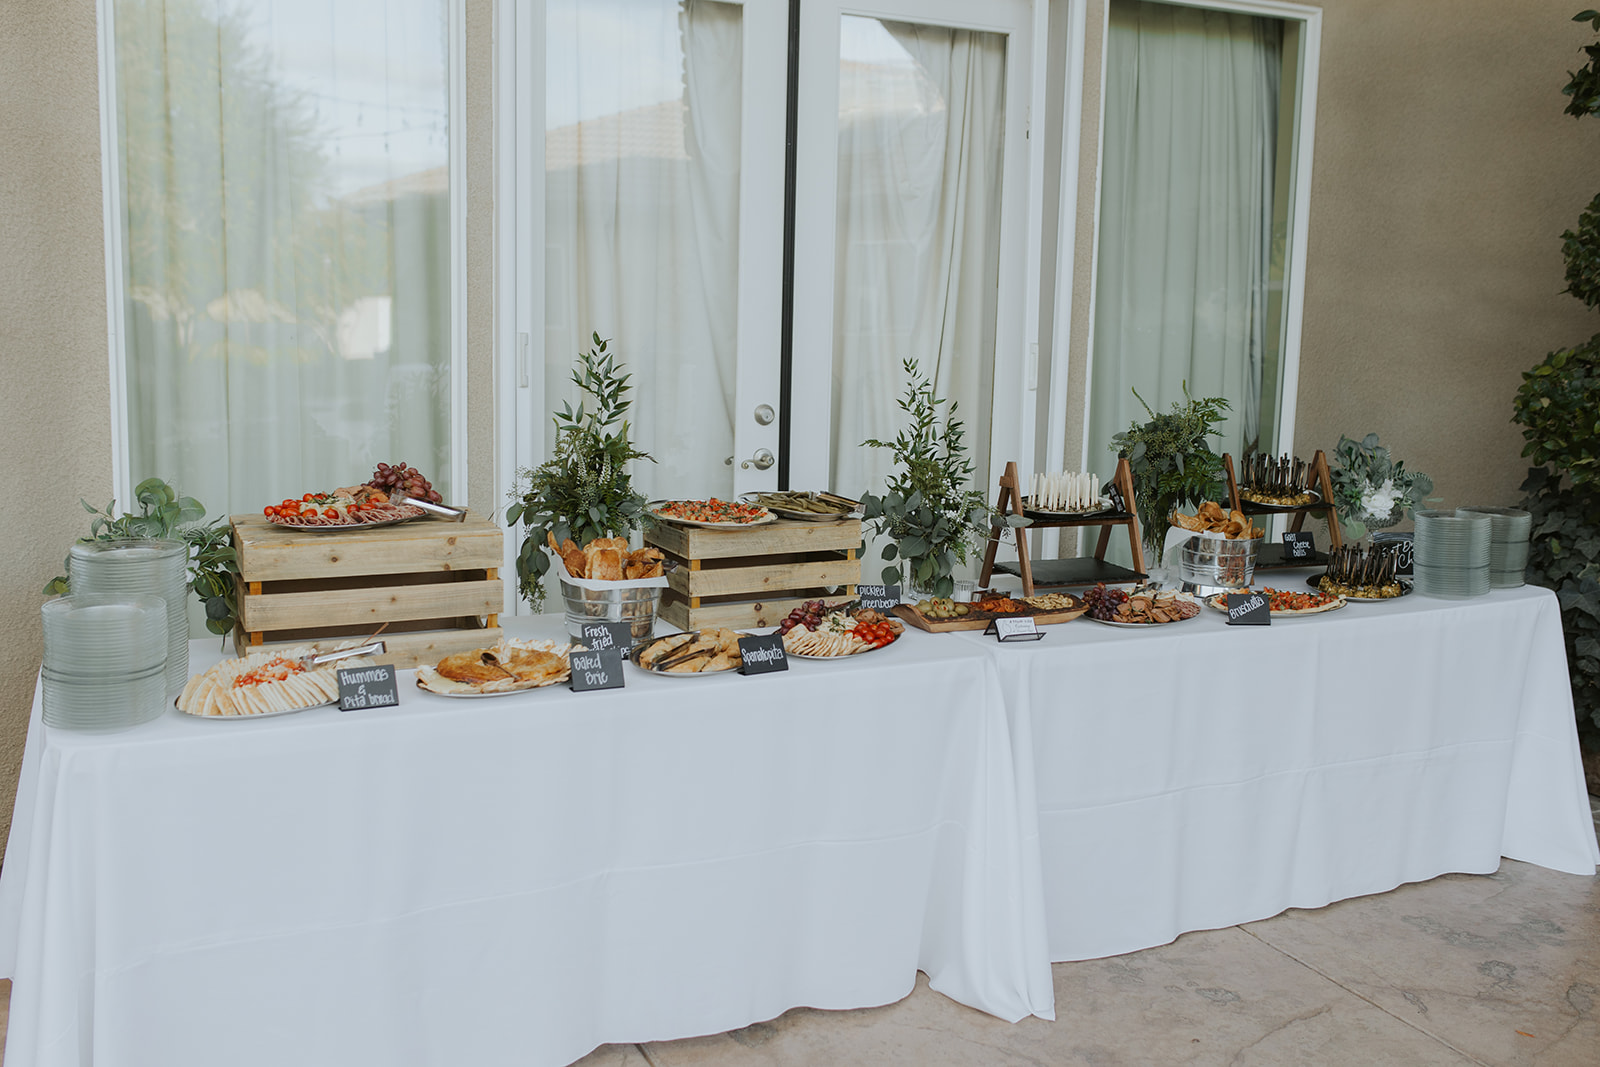 Wedding food table